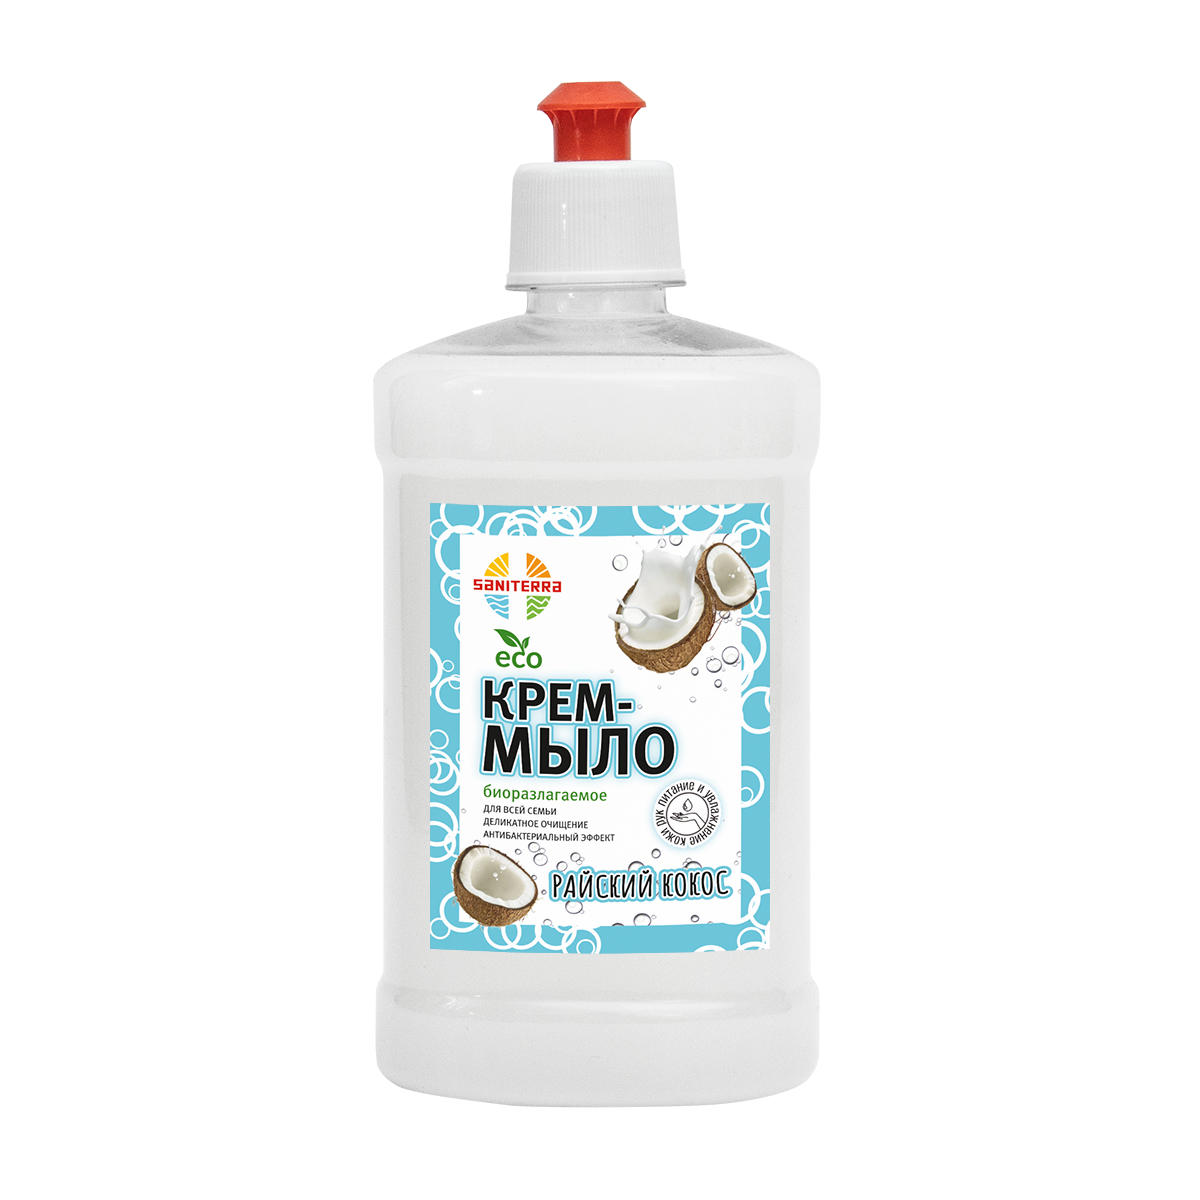 Крем-мыло Райский кокос SANITERRA (пуш-пул) 0,5 л